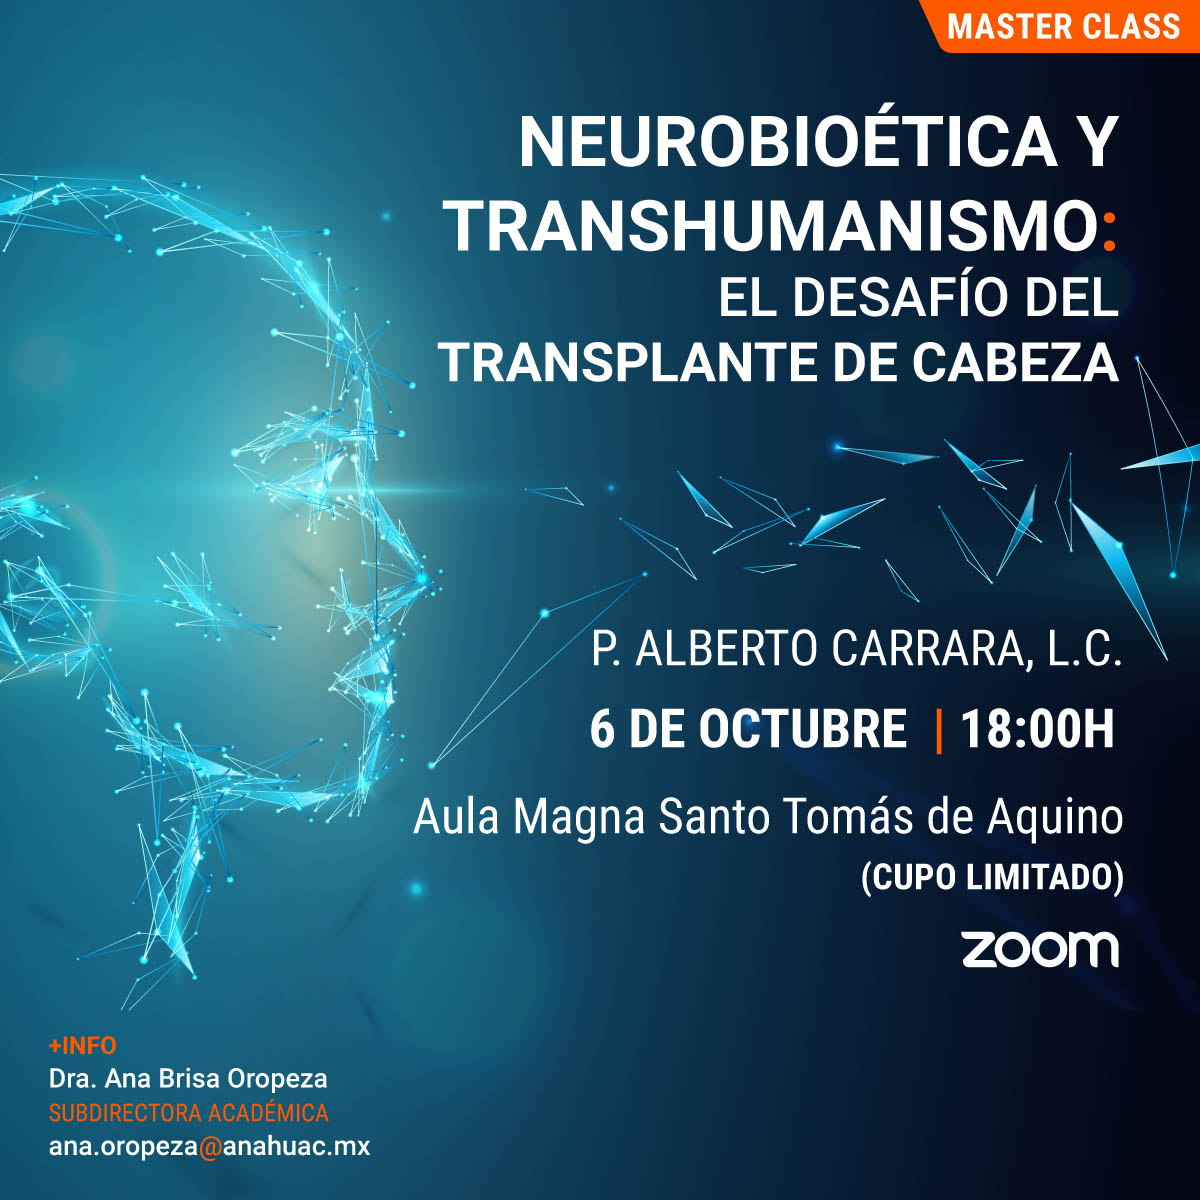 Neurobioética y Transhumanismo: El Desafío del Transplante de Cabeza